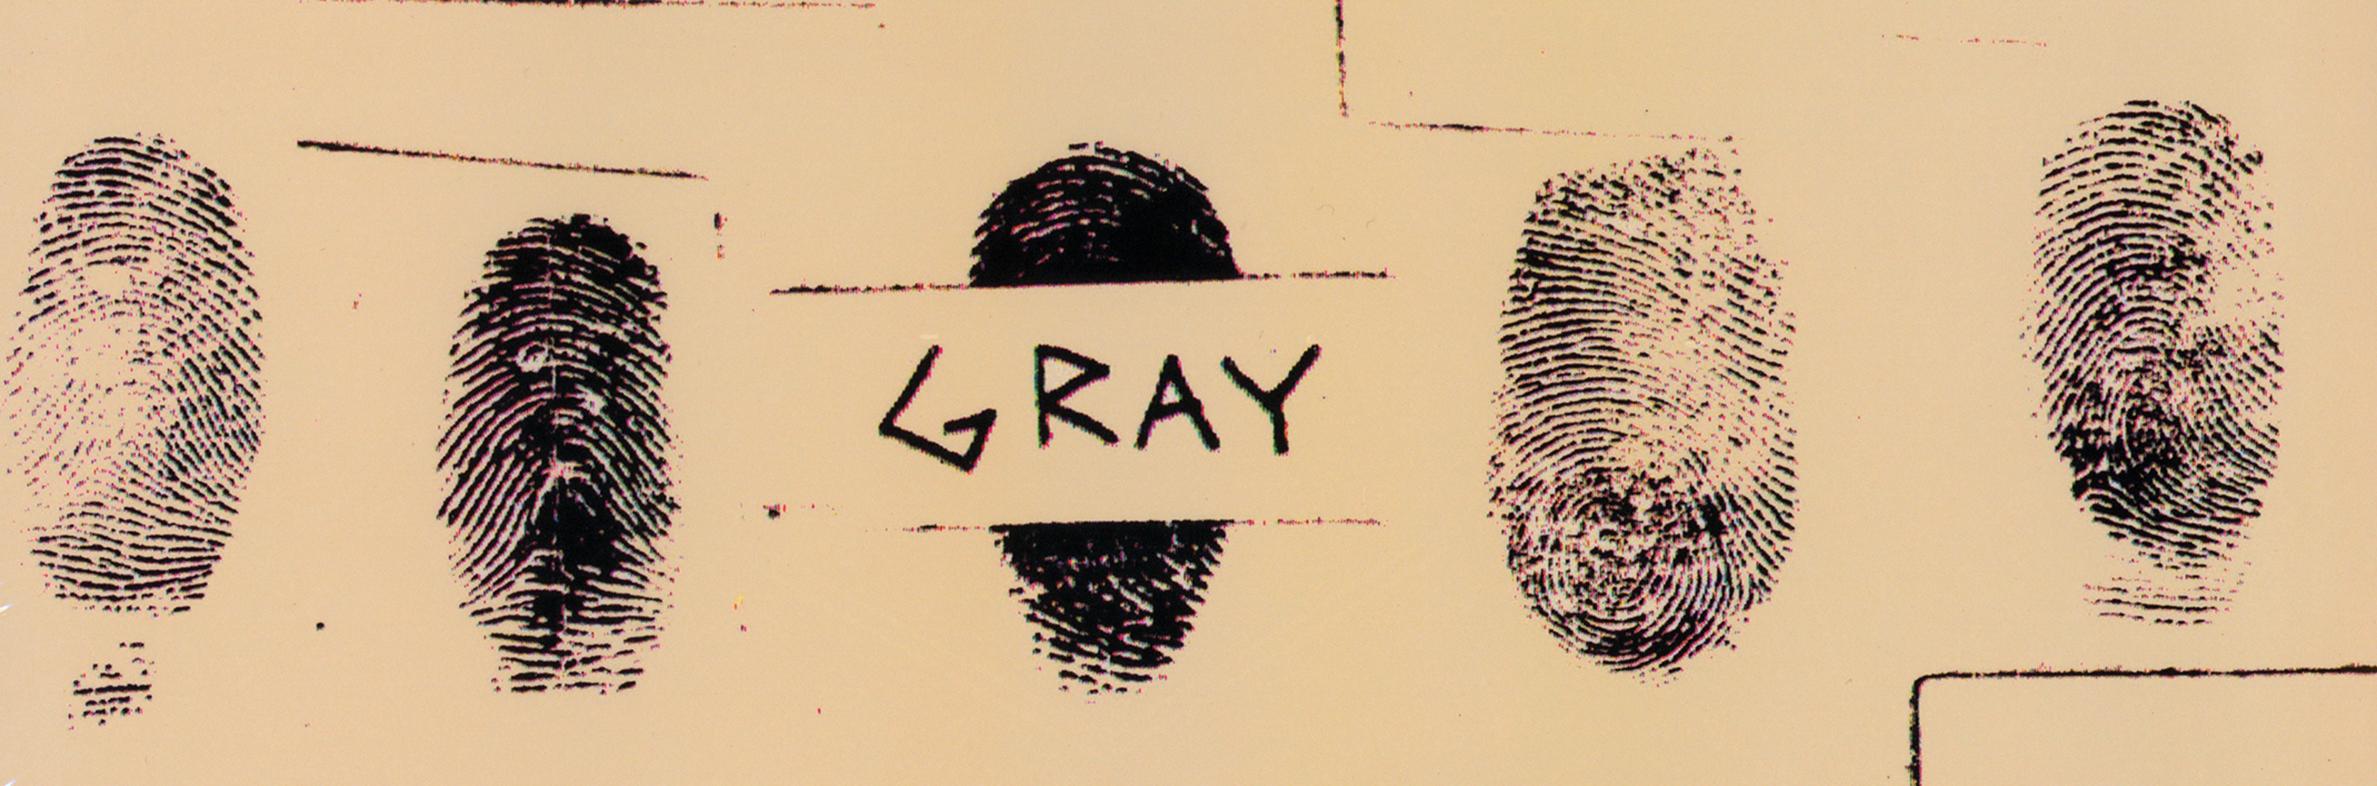 Grau (2) 
Shades Of... (2010), 2013
Vinyl, LP, Limitierte Neuauflage
Plüsch Safe Records - PSR001LP
Co-Produziert von Jean-Michel Basquiat

Seltene 